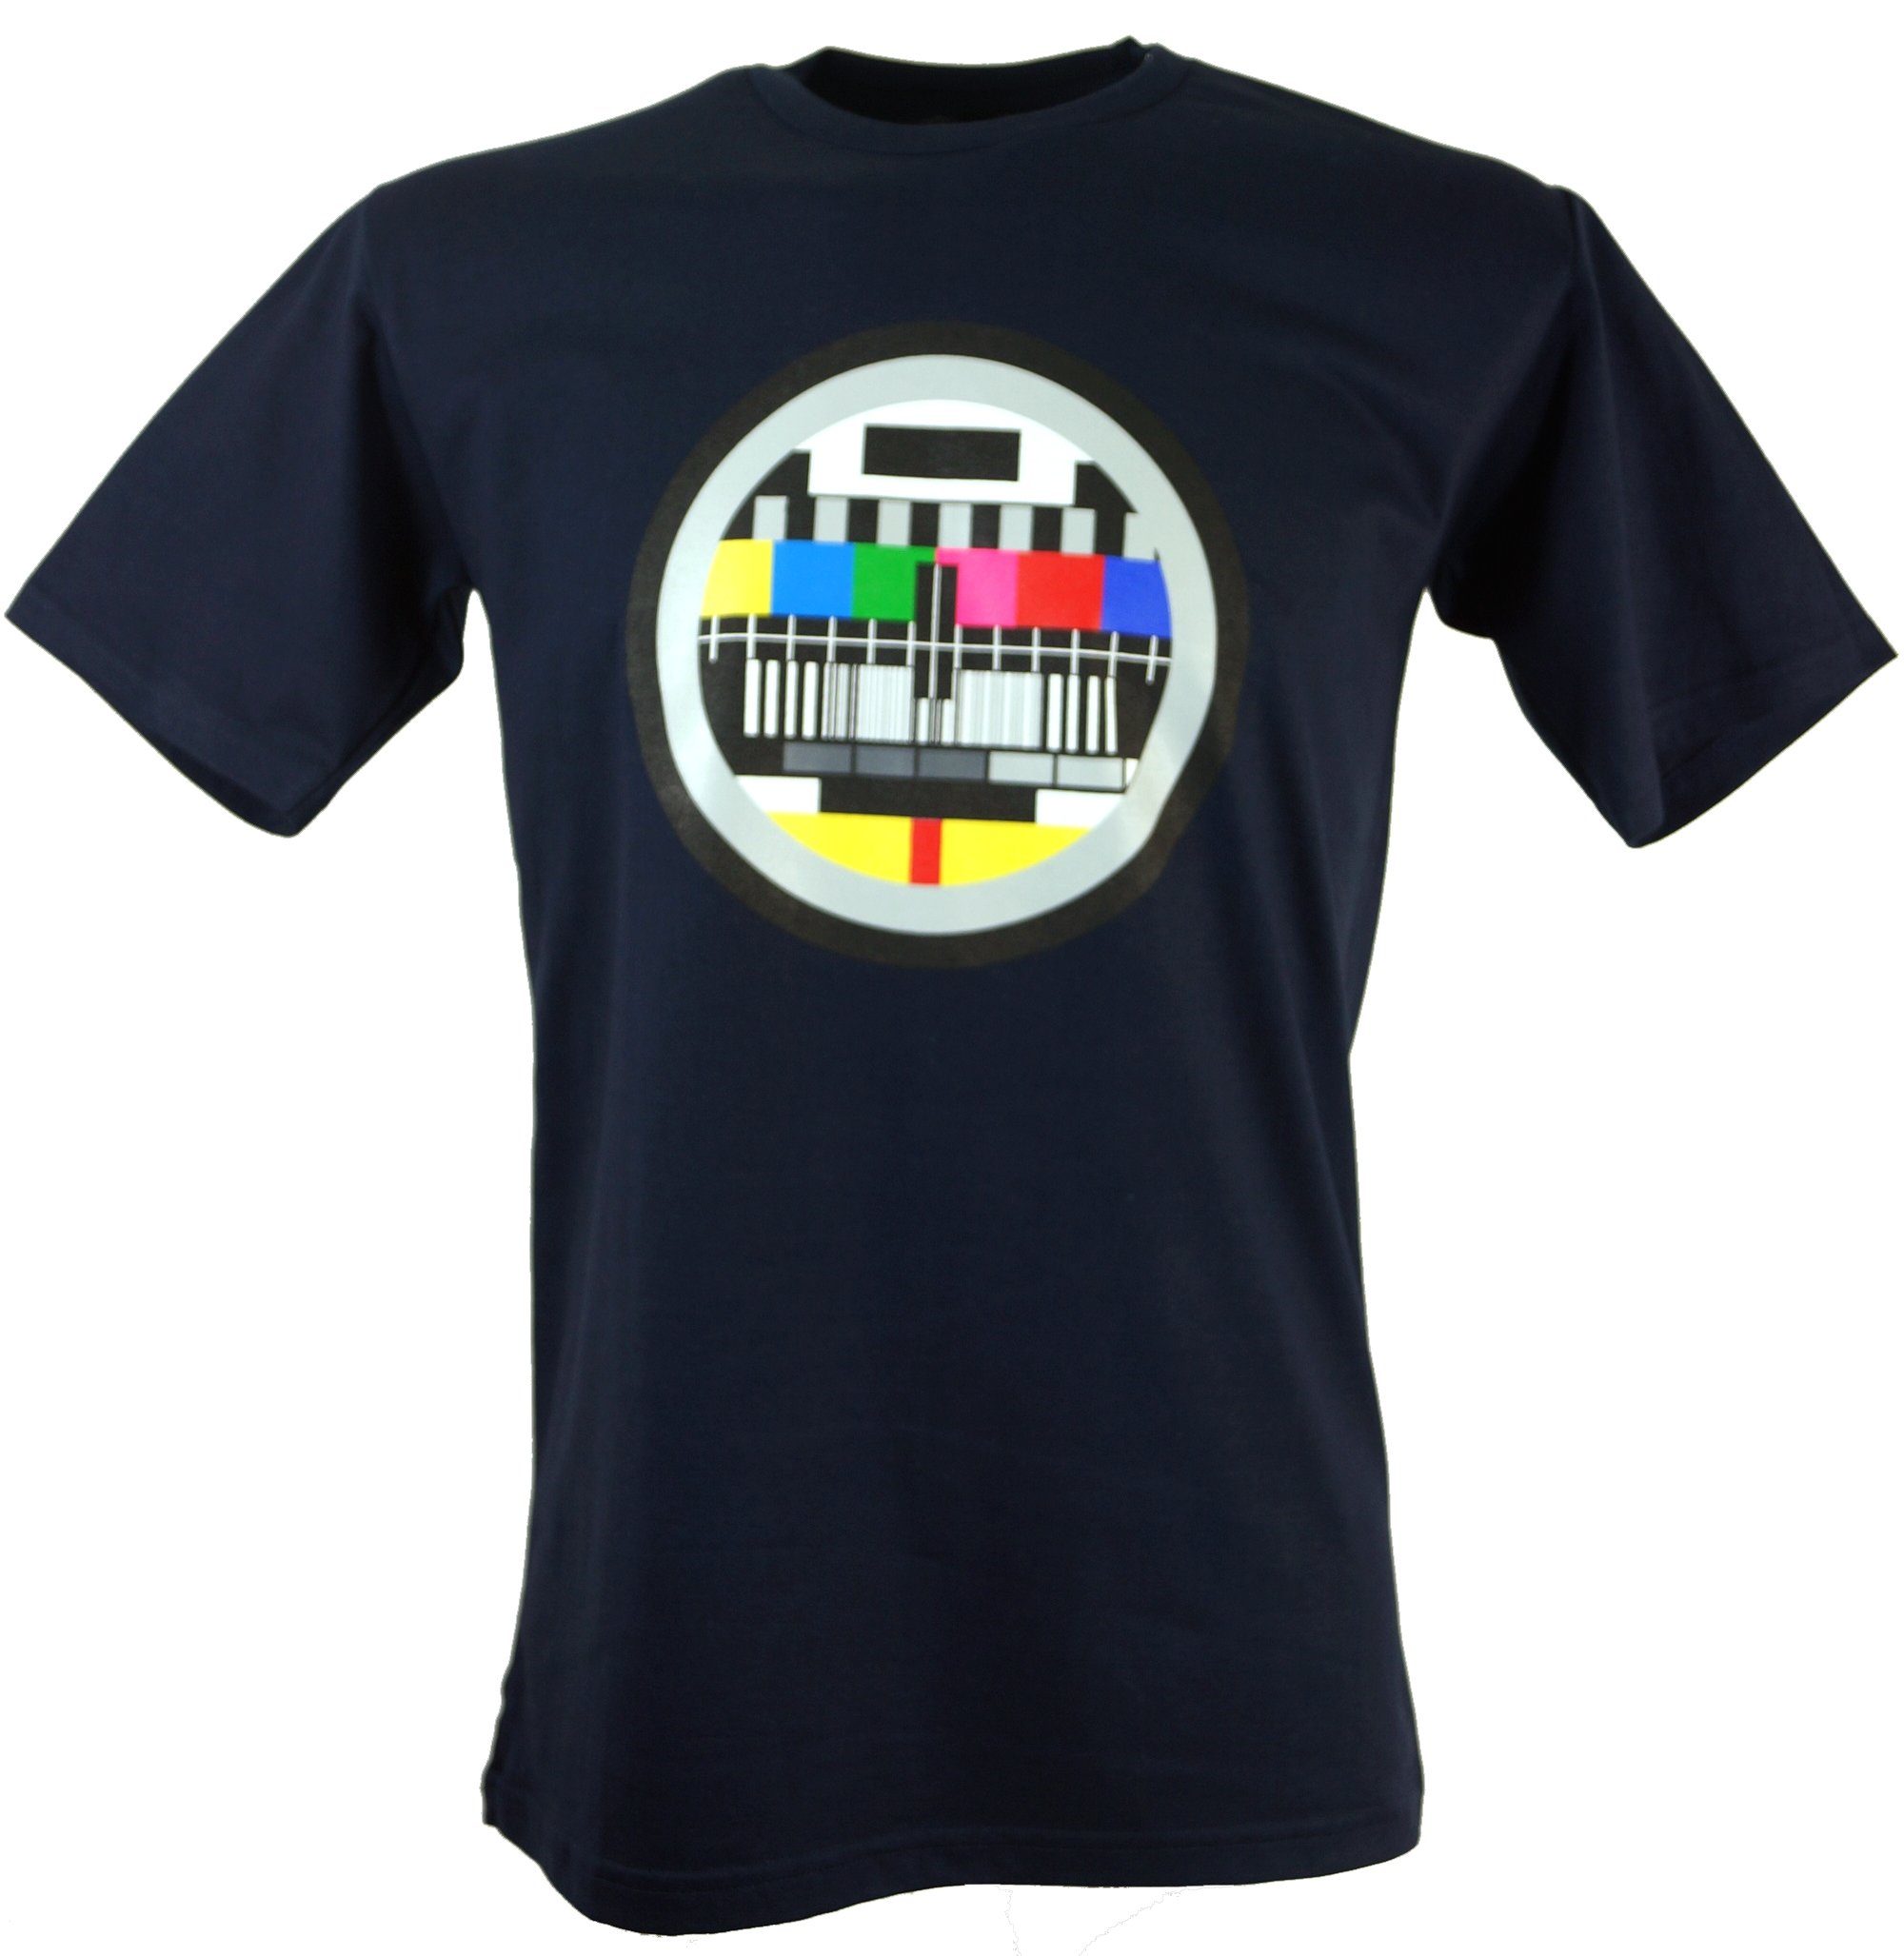 Guru-Shop T-Shirt Fun Retro Art T-Shirt `Testbild` - dunkelblau alternative Bekleidung